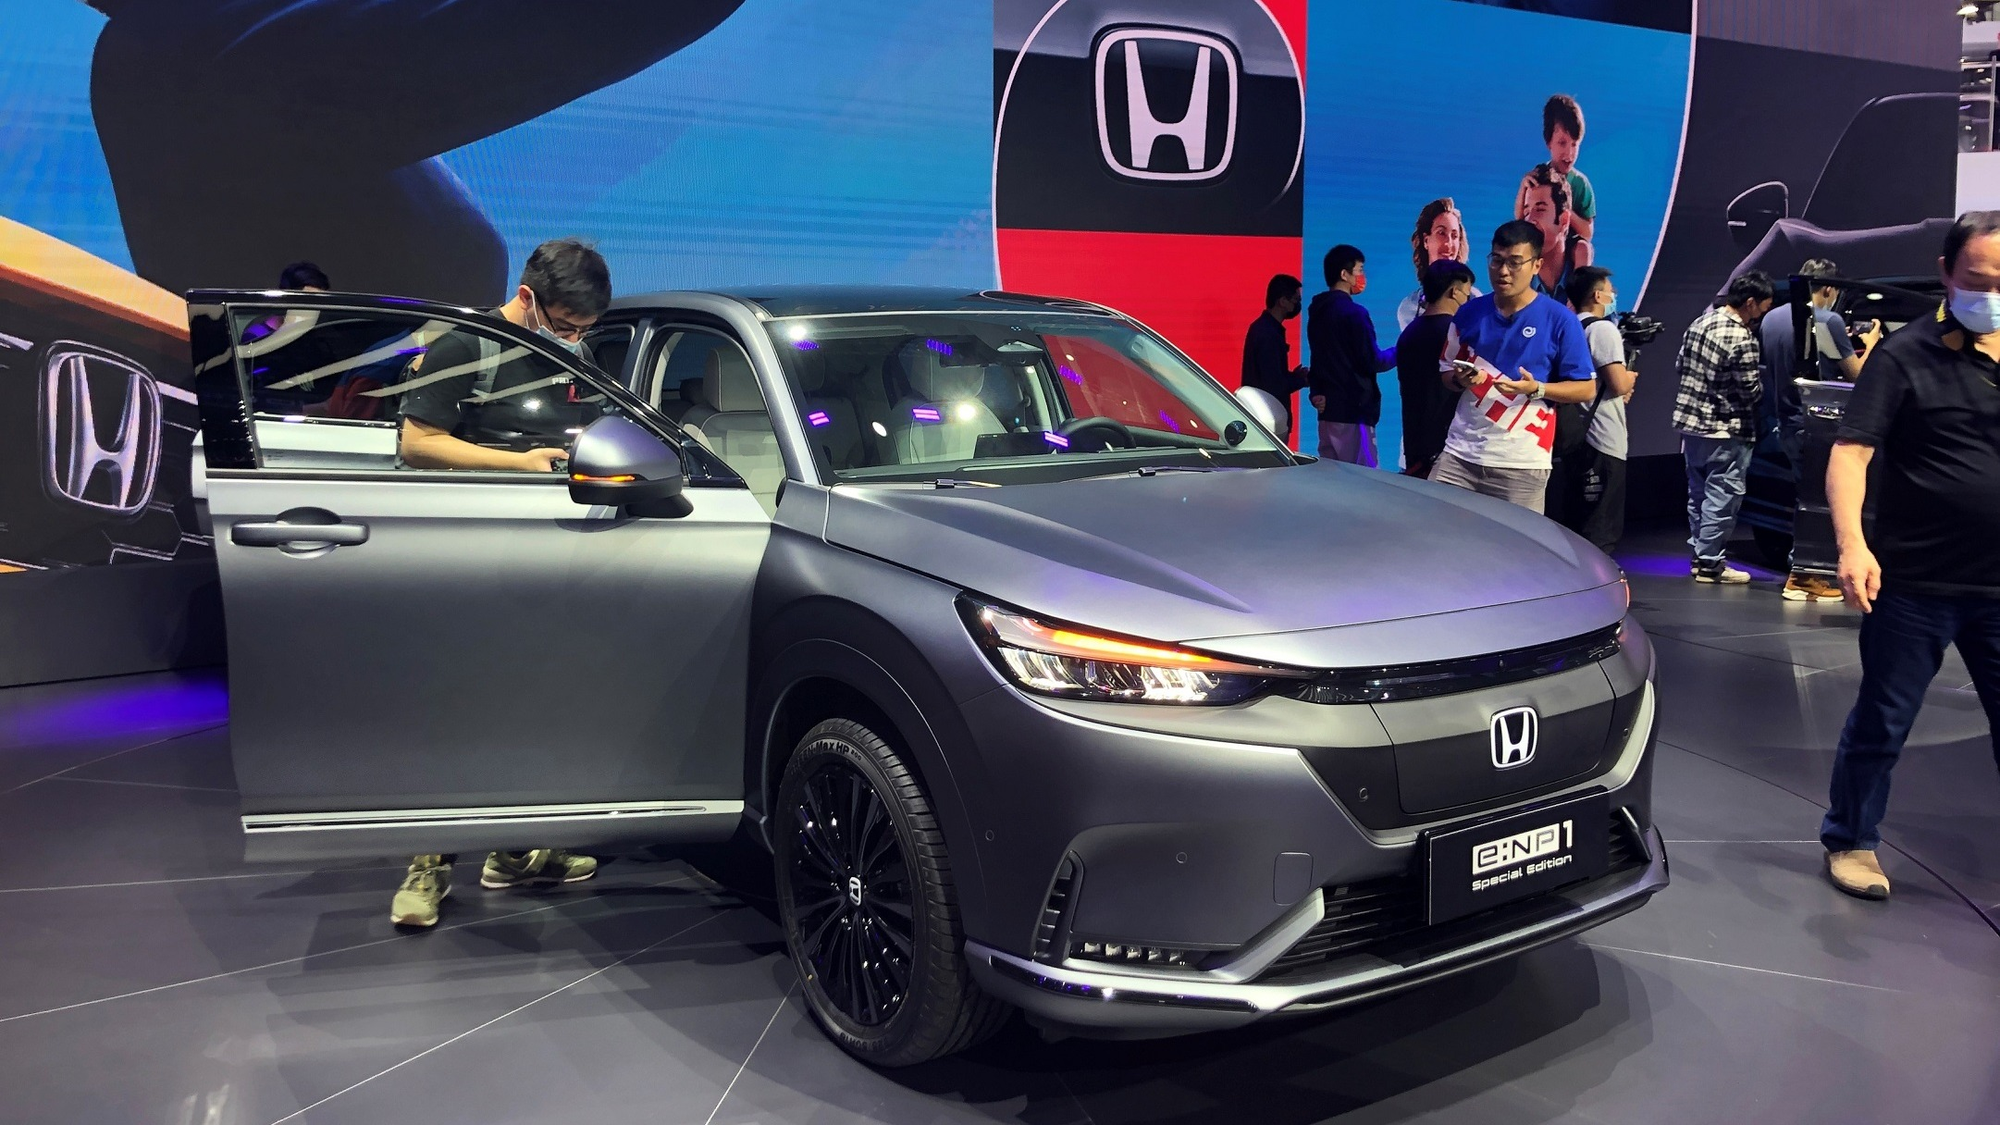 Chuyện chưa từng xảy ra ở Trung Quốc: Vì đâu Honda, Toyota đồng loạt sa thải hàng loạt vì không cạnh tranh được với các hãng xe điện bản địa? - Ảnh 1.